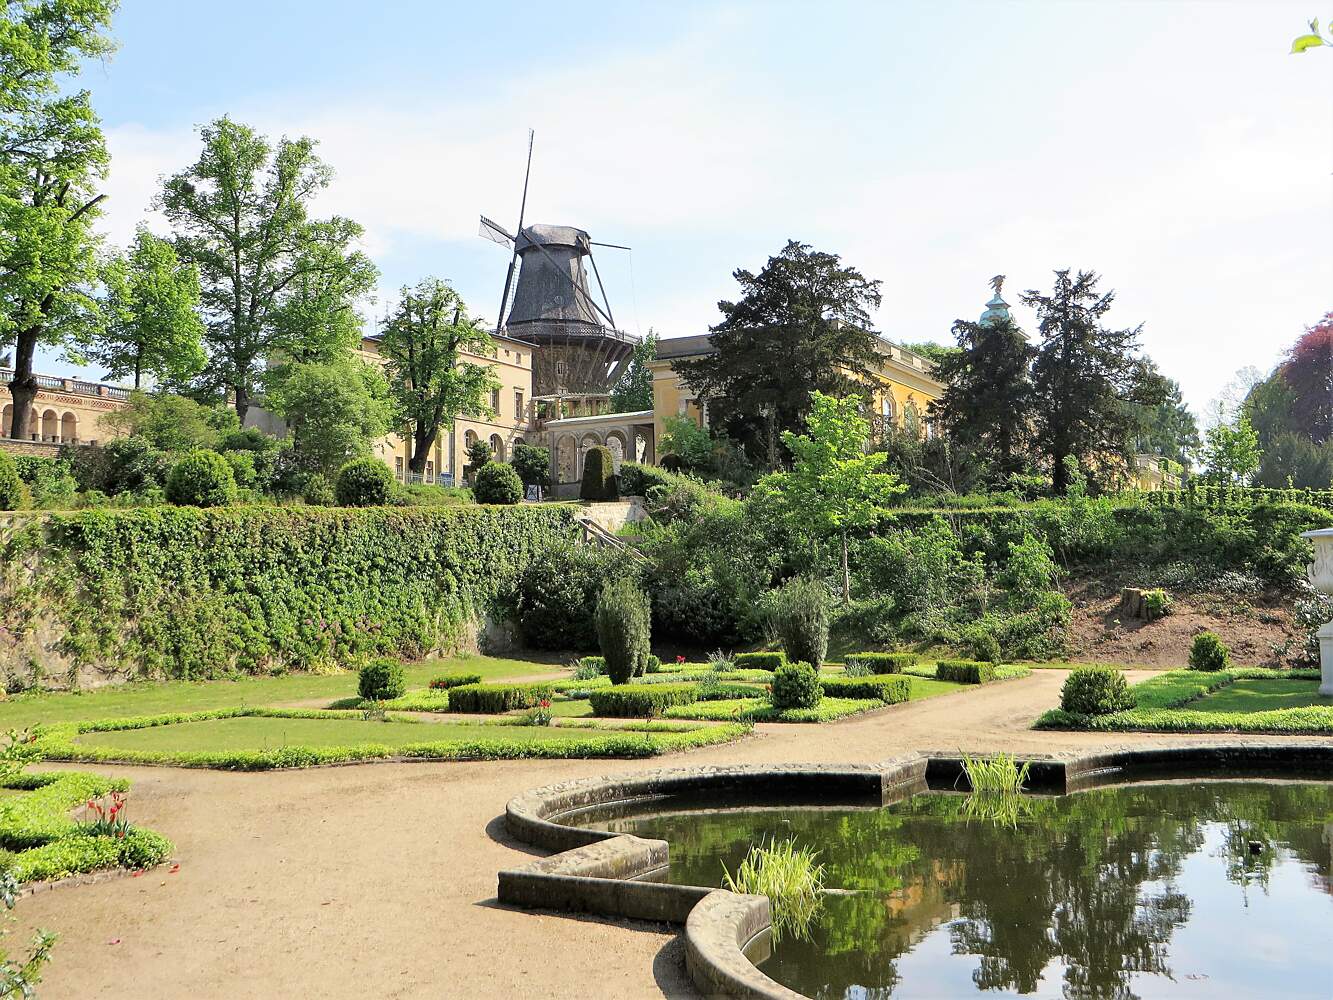 Neuer Garten Potsdam Schön Sicilian Garden – Potsdam – tourist attractions Tropter